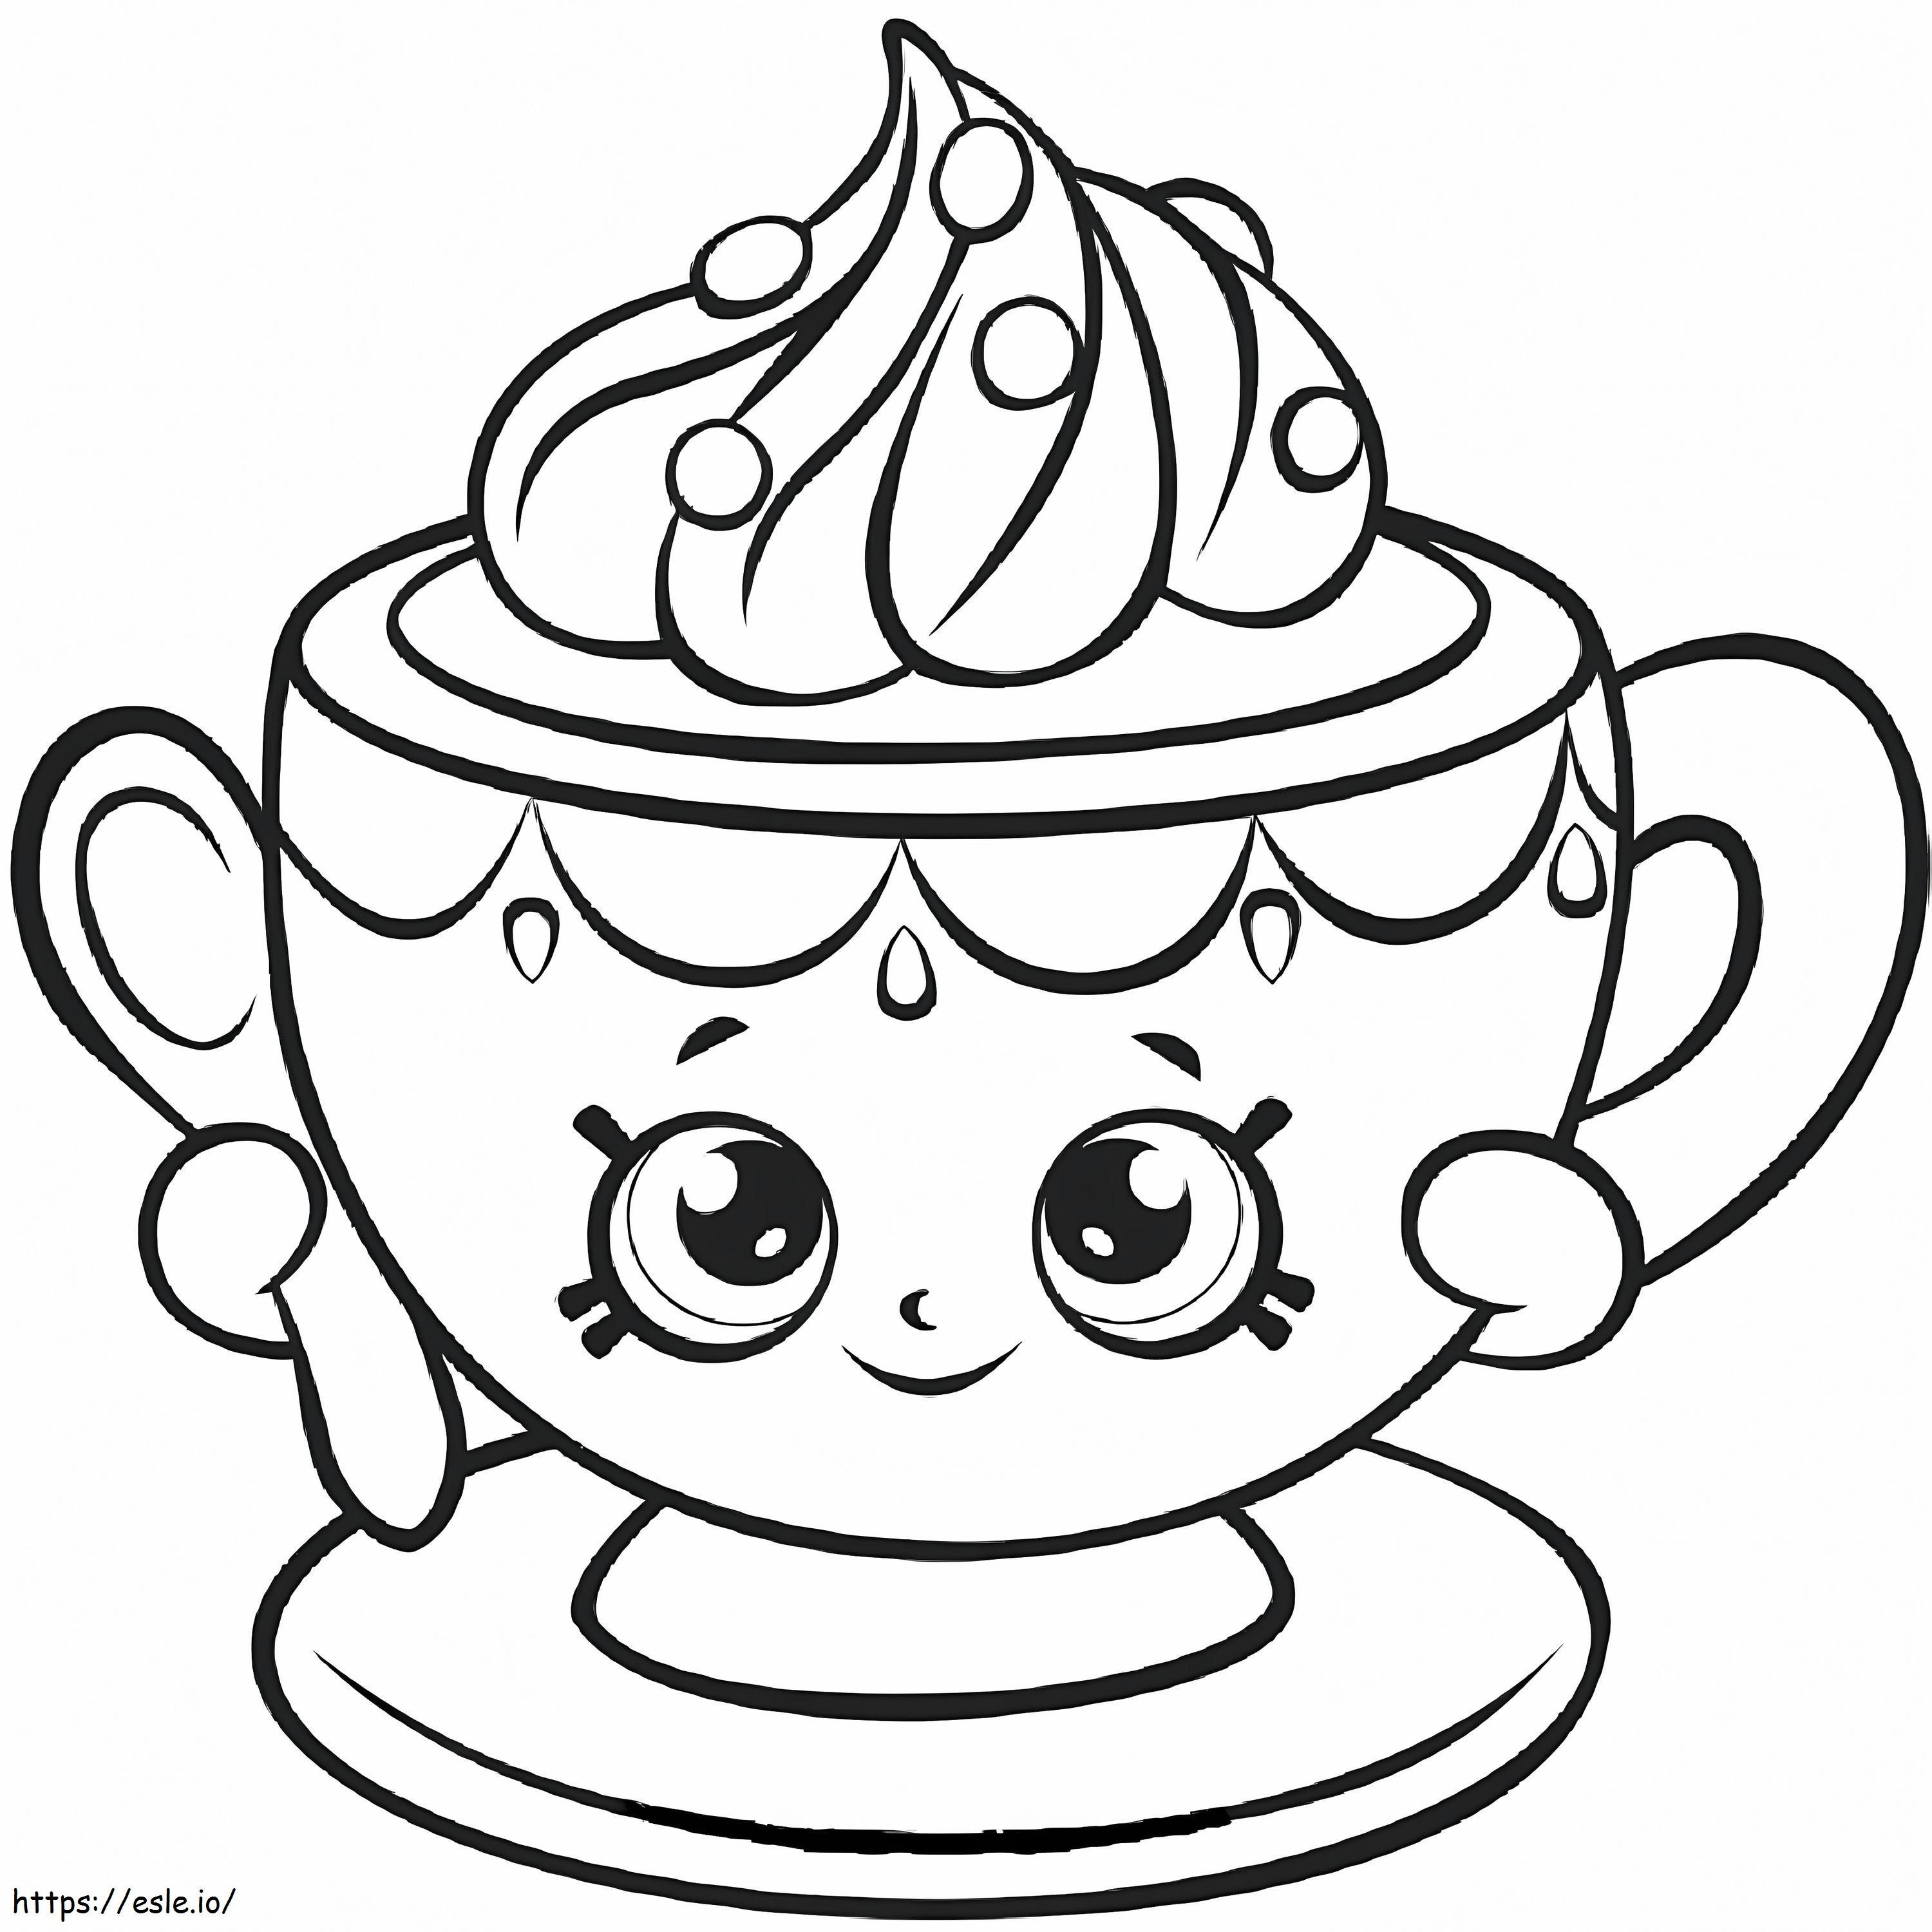 Coloriage Petite tasse à thé Shopkin à imprimer dessin